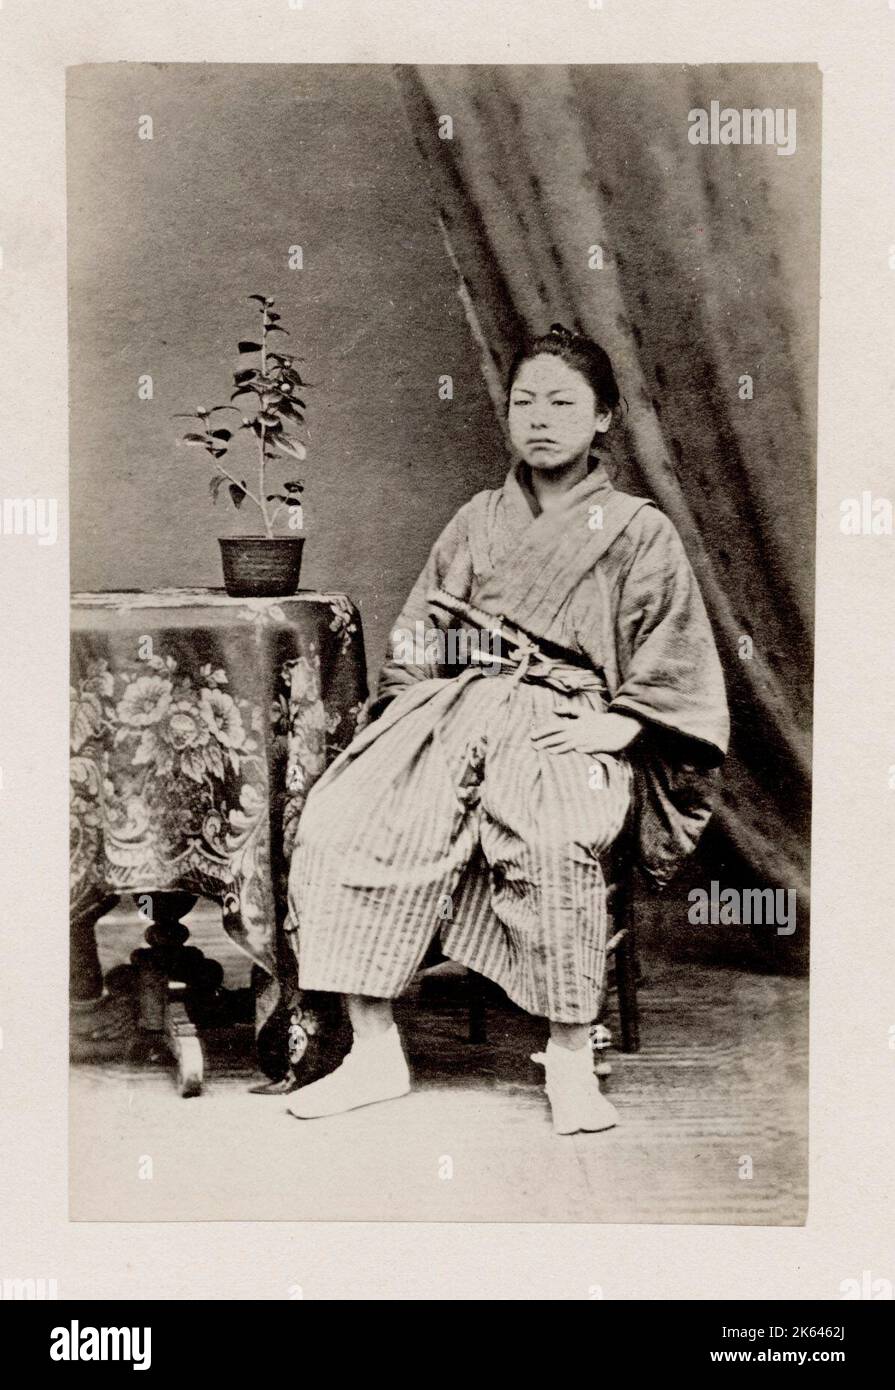 Vintage 19. Jahrhundert Fotografie - frühe fotografische Porträt aus Japan, wahrscheinlich das Werk der japanischen Fotografin Shimooka Renjo - sitzender Mann mit Schwert. Stockfoto